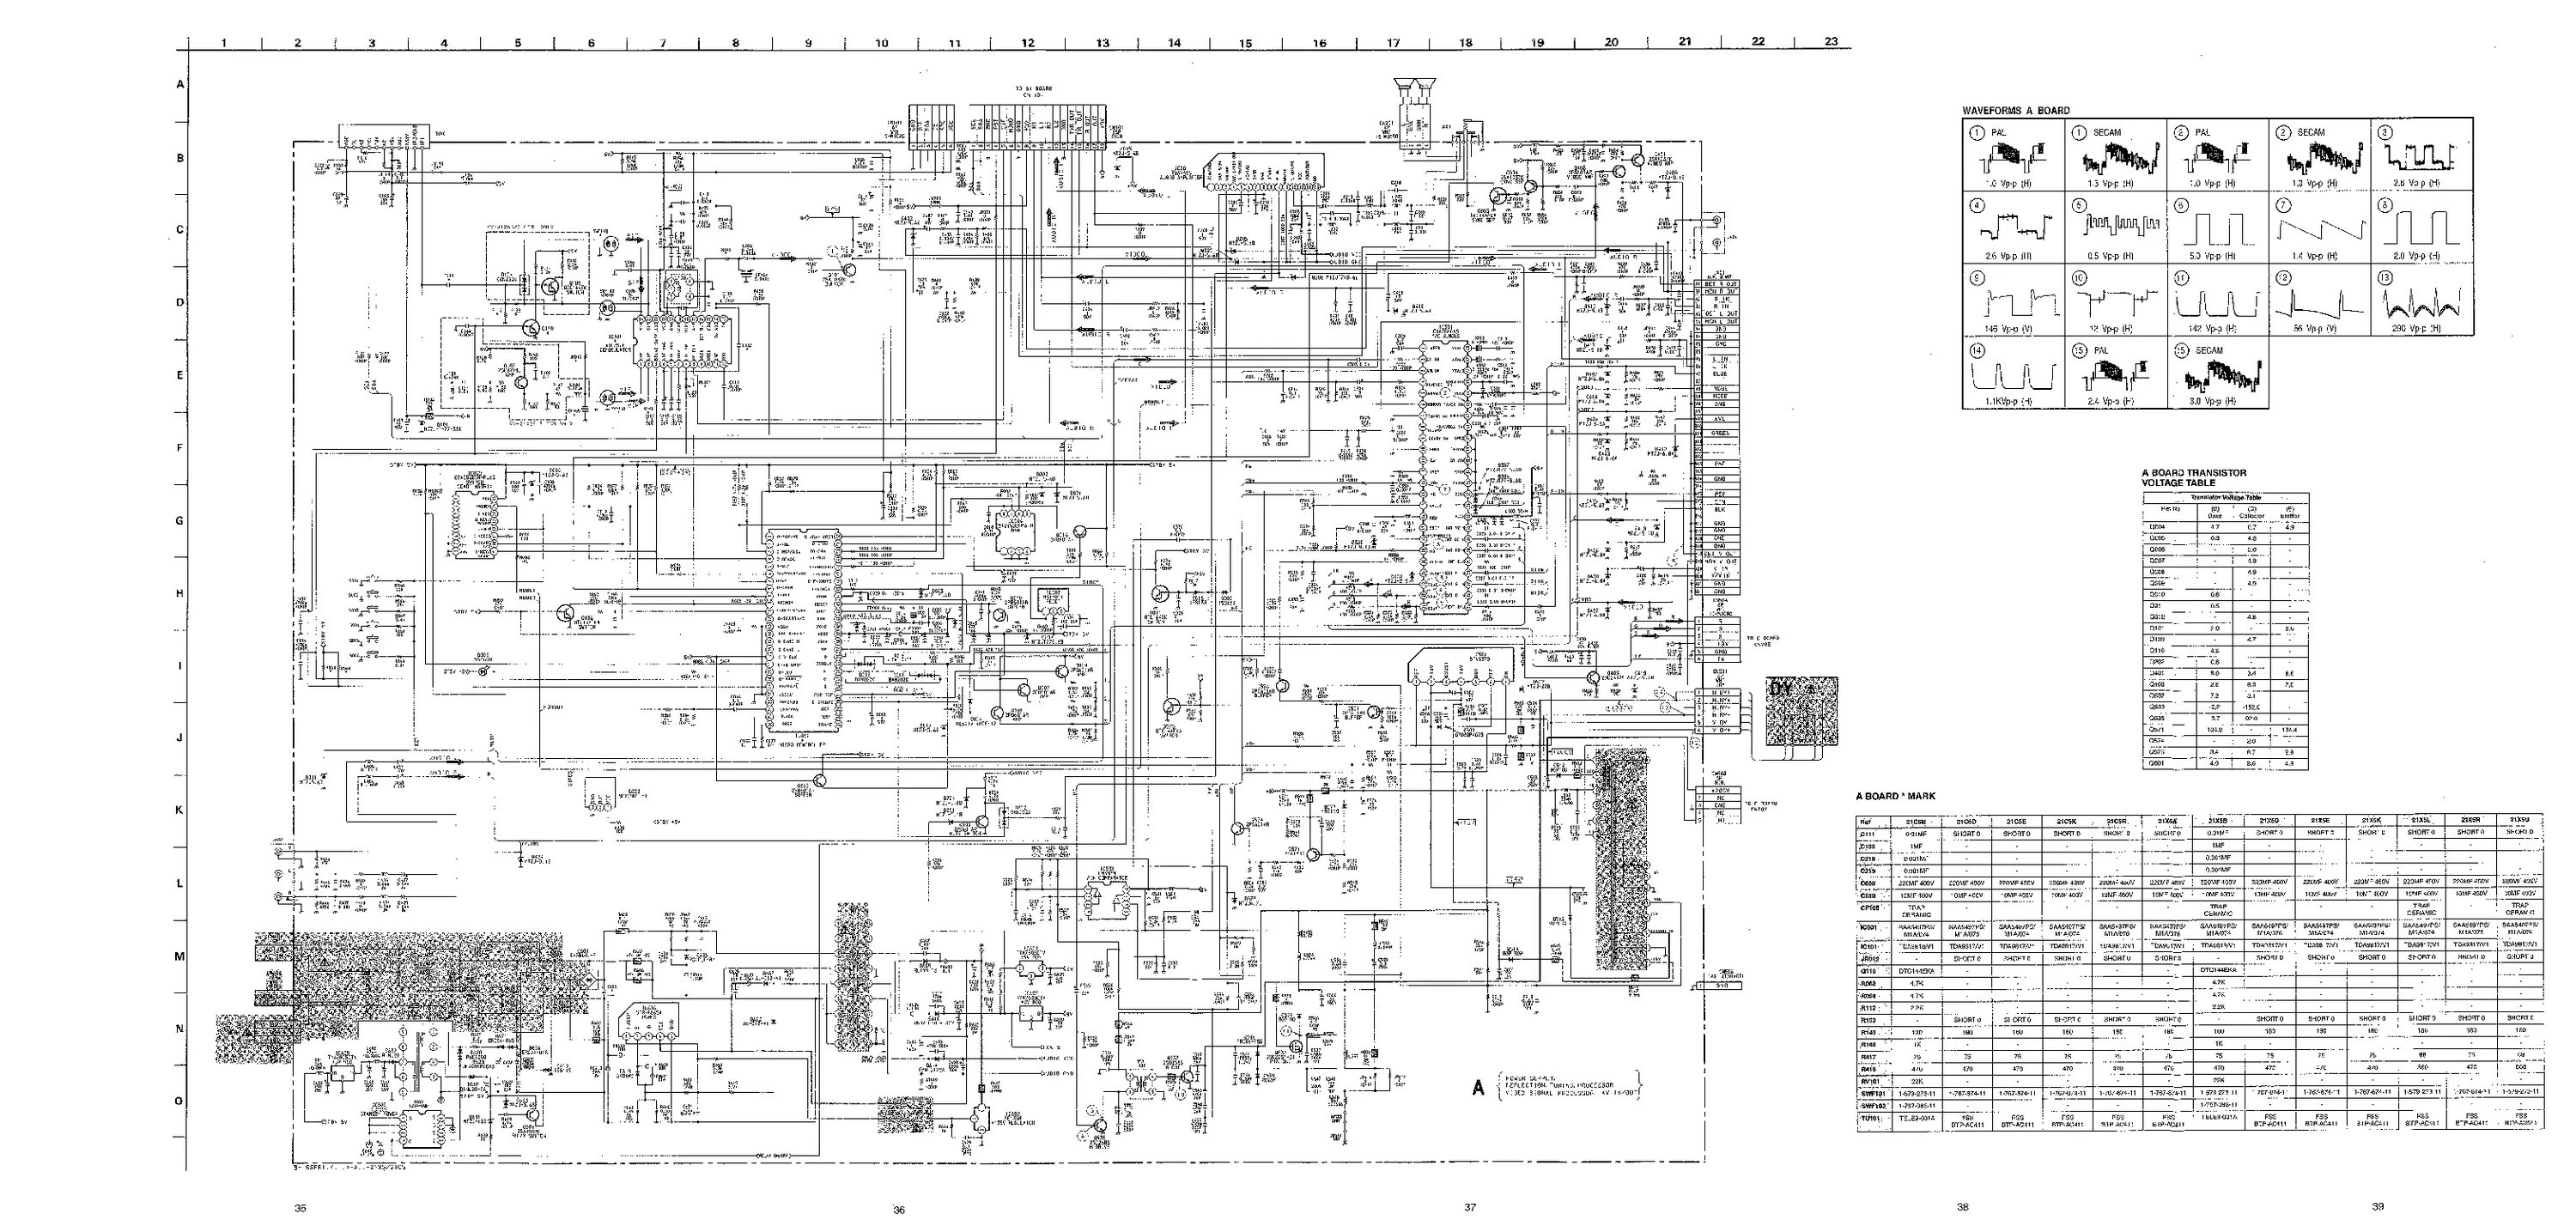 Sony KV-25e1r service manual. Sony шасси Fe-2. Телевизор Sony KV-14t1r схема. Телевизор сони KV-g21м1 схема. Схема телевизора sony